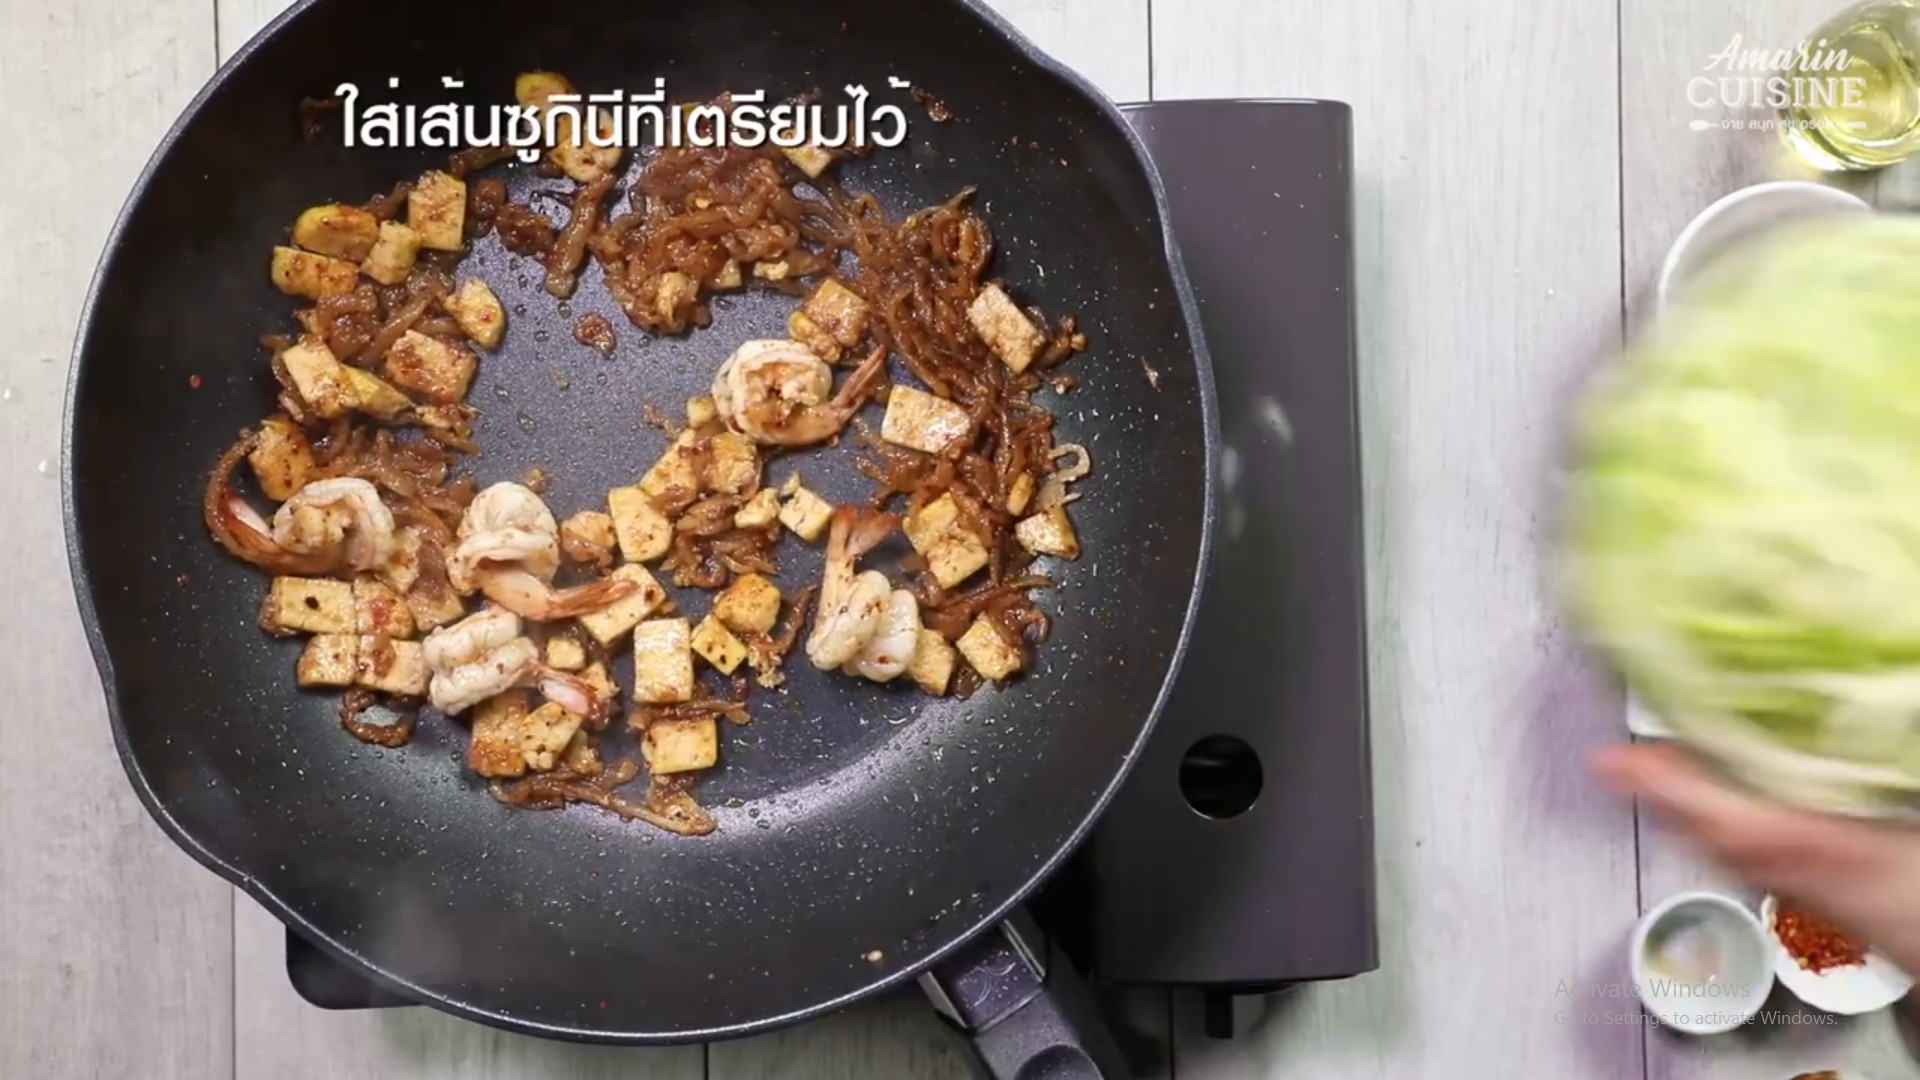 สูตรอาหาร เมนูสุขภาพ เมนูทำง่าย เคล็ดลับการทำอาหาร ผัดไทย